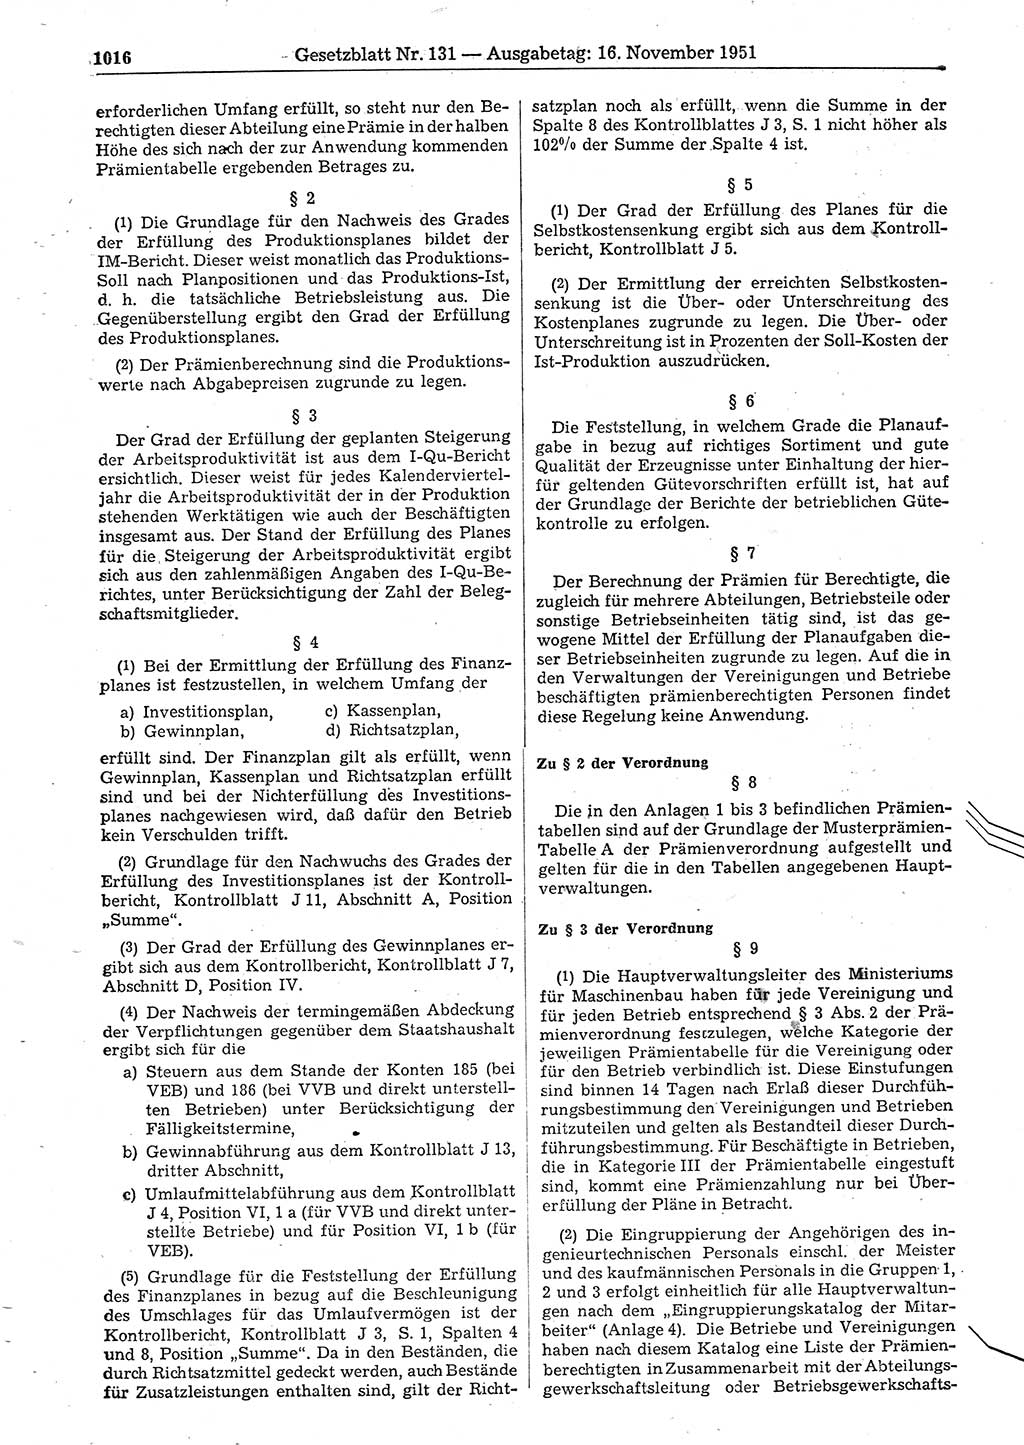 Gesetzblatt (GBl.) der Deutschen Demokratischen Republik (DDR) 1951, Seite 1016 (GBl. DDR 1951, S. 1016)